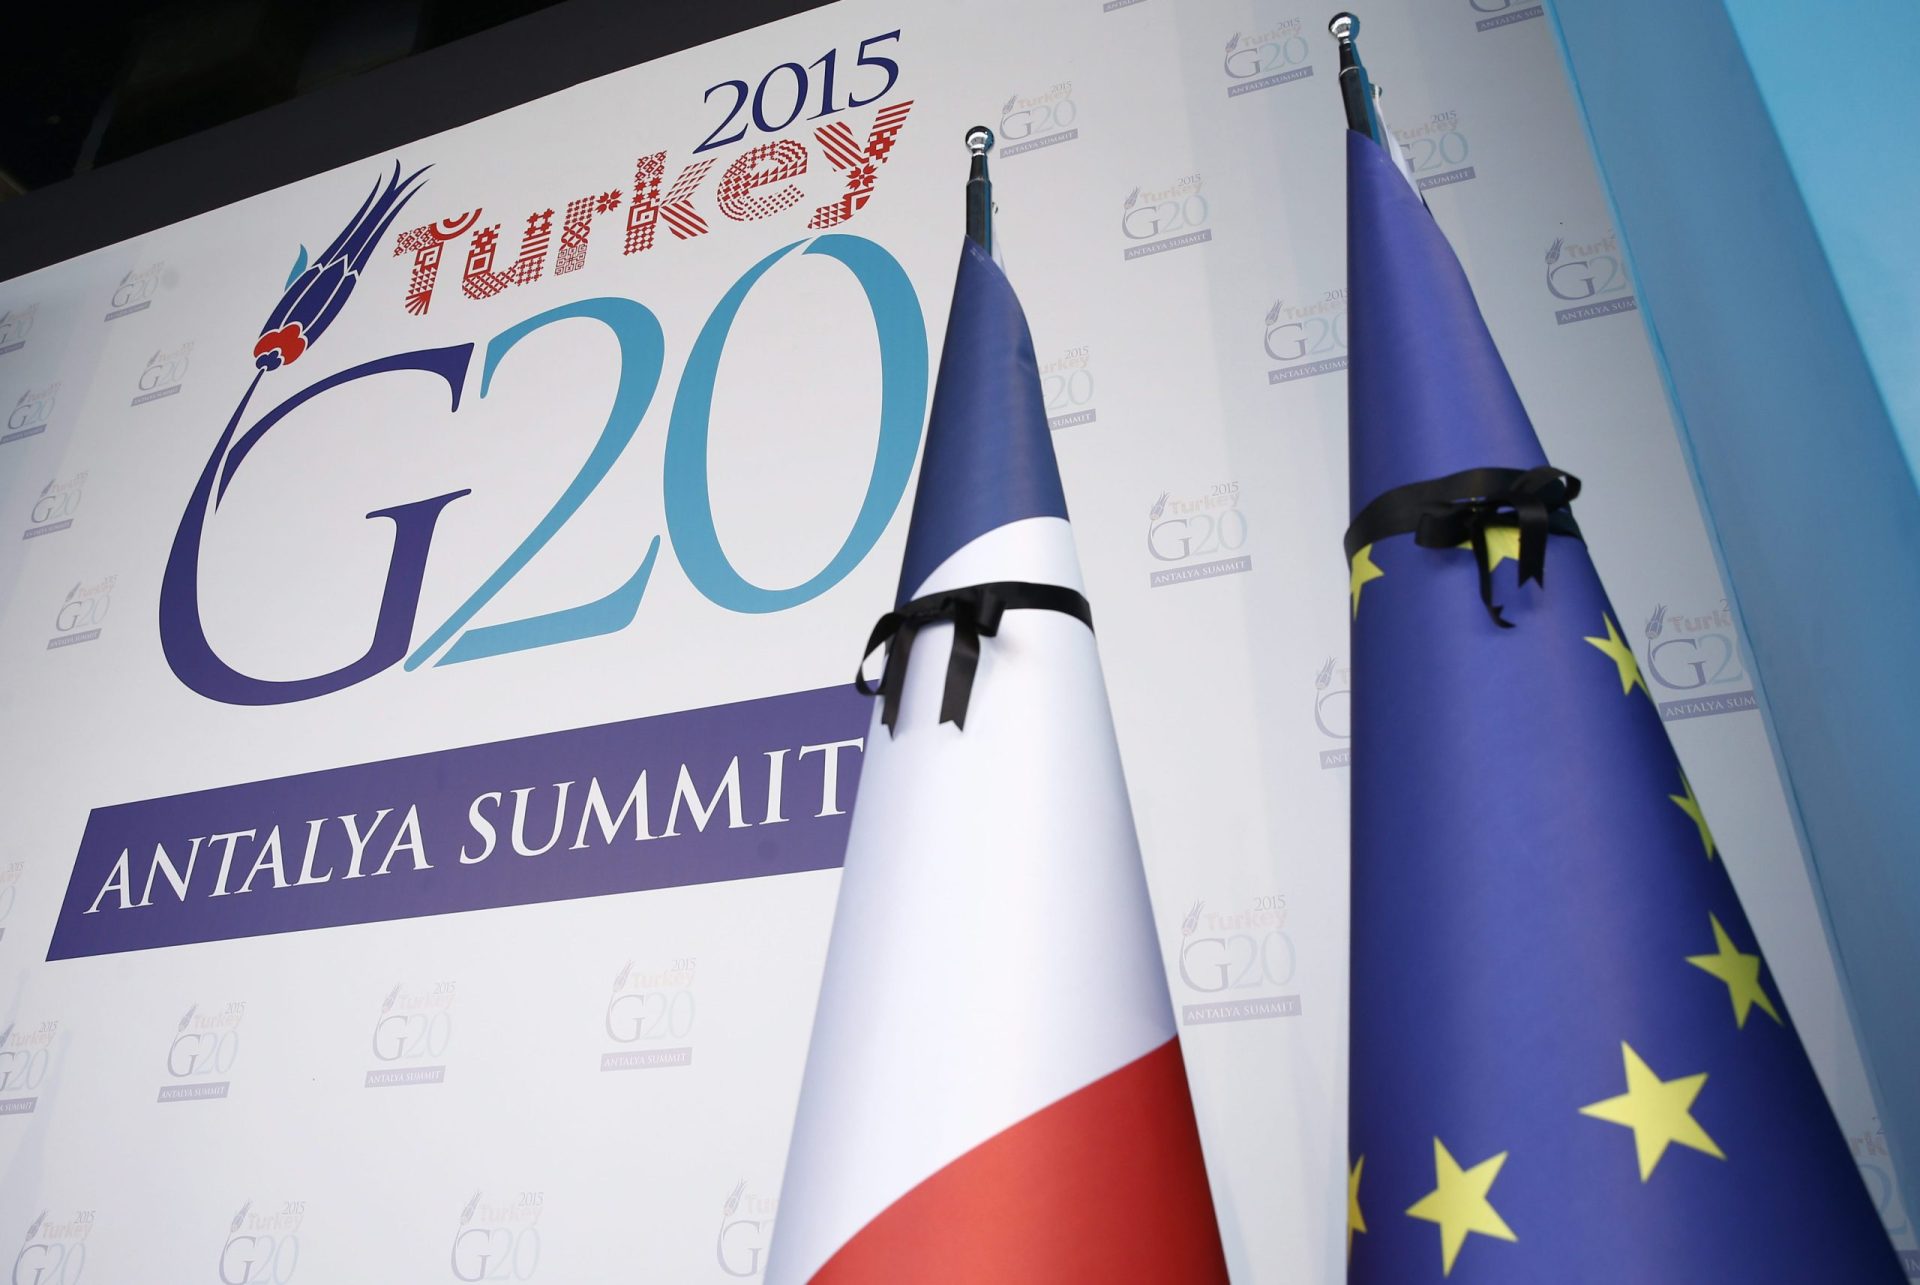 Jihadistas tinham planos contra a cimeira do G20